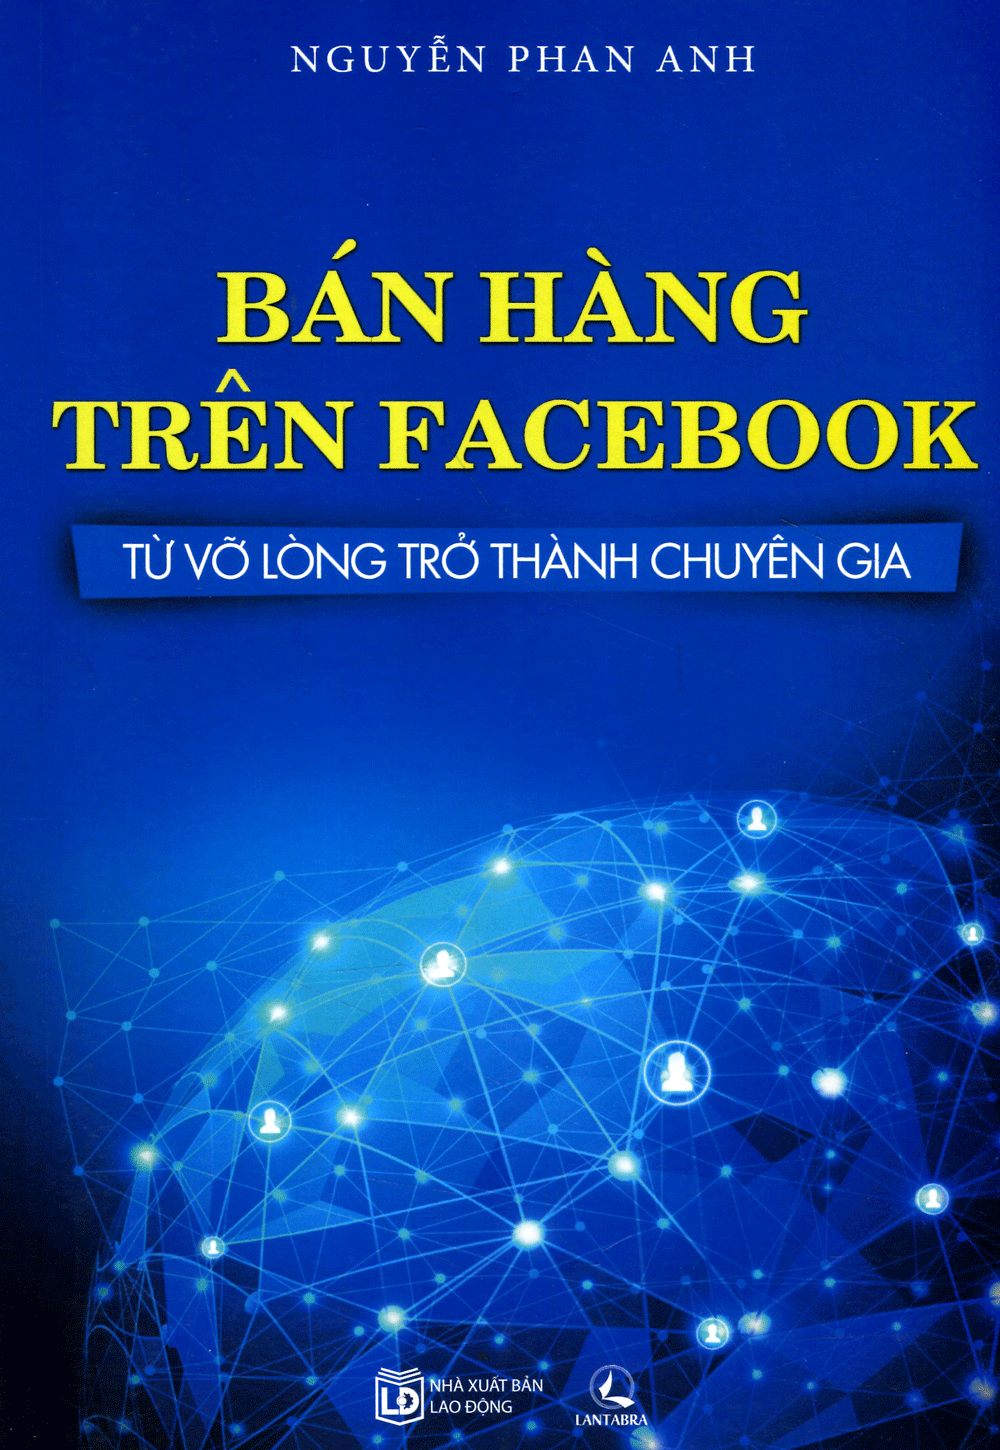 Bạn chắc hẳn đã biết tới Nguyễn Phan Anh tác giả của cuốn sách Bán hàng trên Facebook